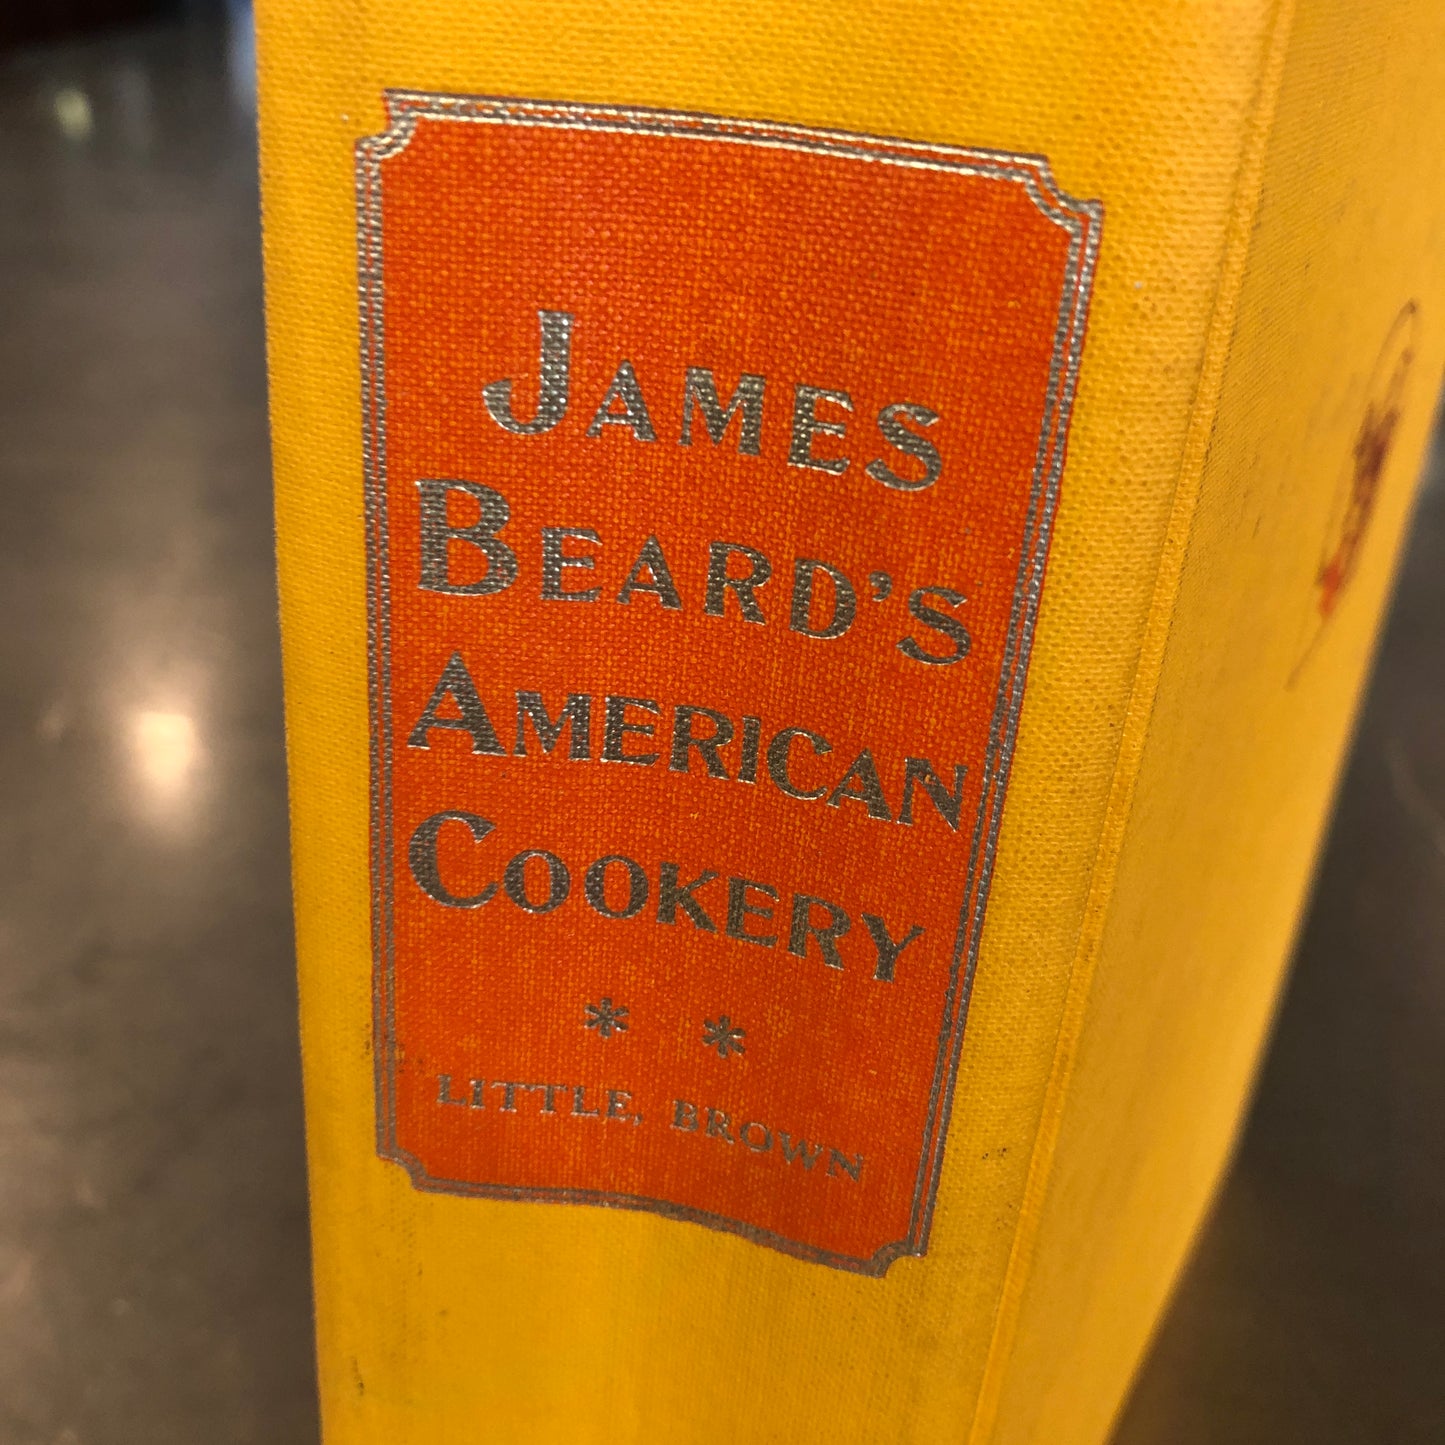 James Beard Cook Book